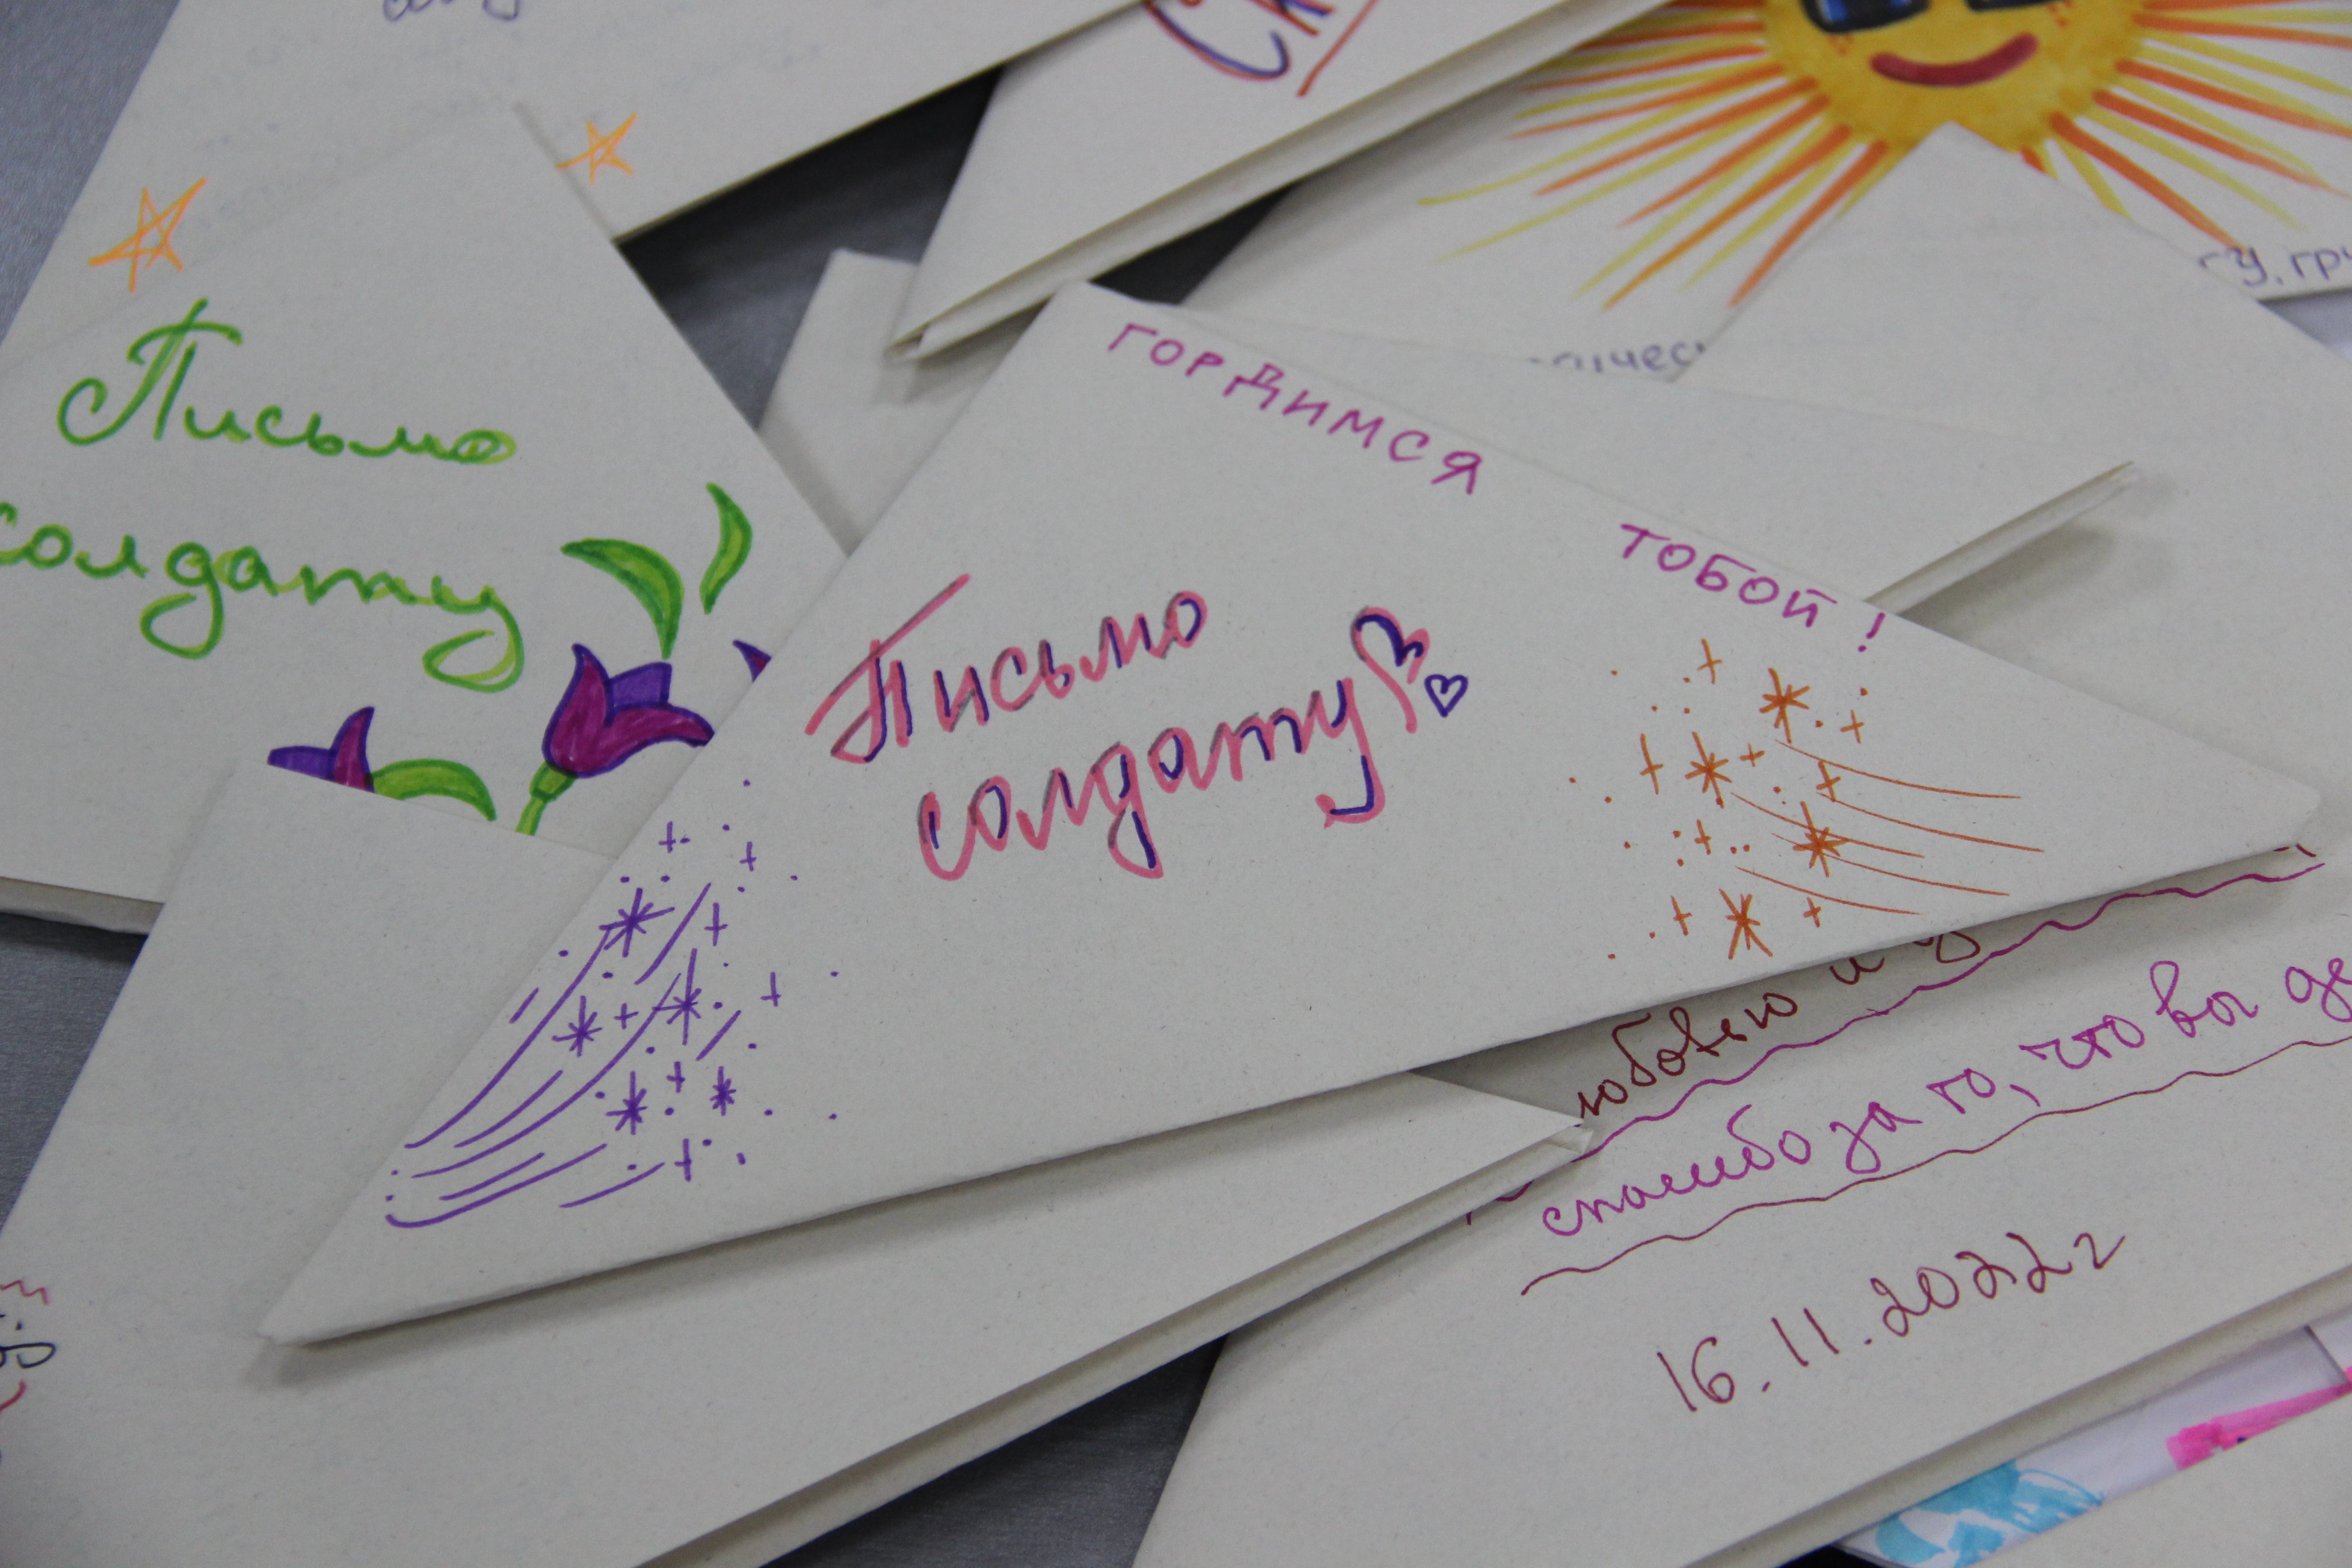 «Единая Россия» доставила письма от детей в учебный центр Ковровского района